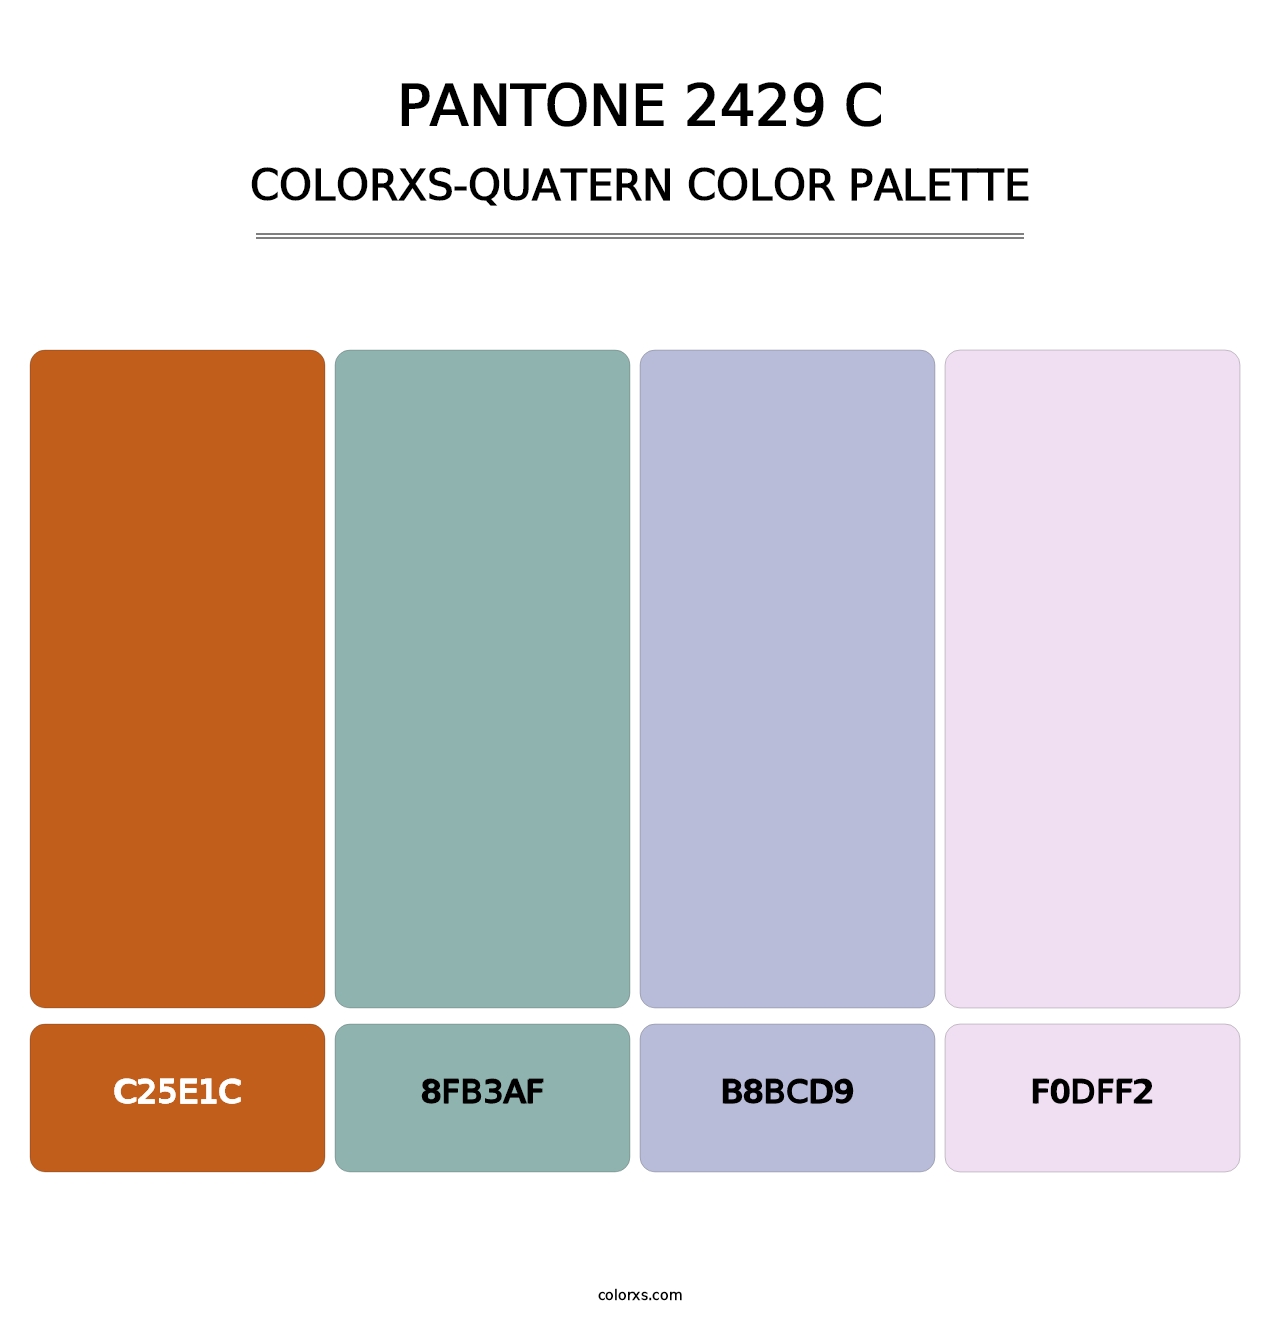 PANTONE 2429 C - Colorxs Quatern Palette